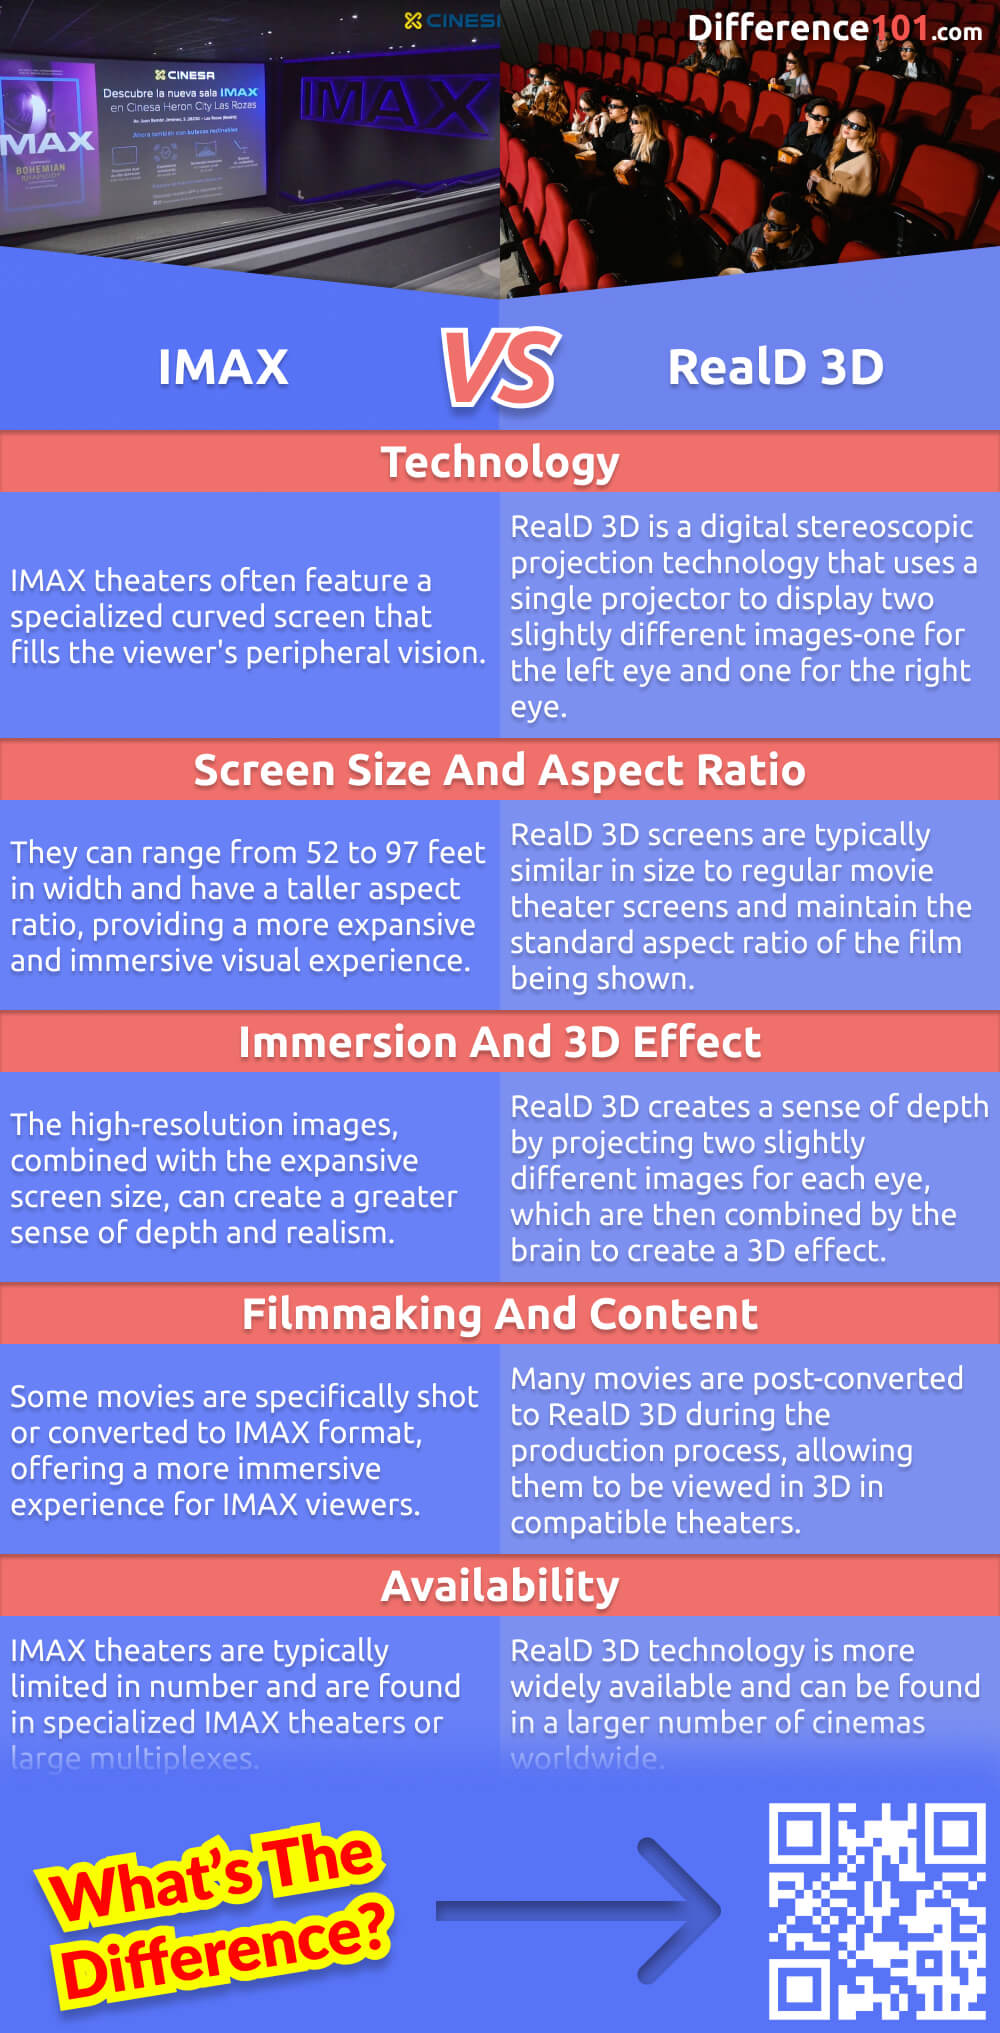 Kennen Sie den Unterschied zwischen IMAX und RealD 3D? Wir erklären Ihnen die wichtigsten Unterschiede zwischen den beiden Technologien sowie die Vor- und Nachteile, damit Sie entscheiden können, welche für Sie die richtige ist.